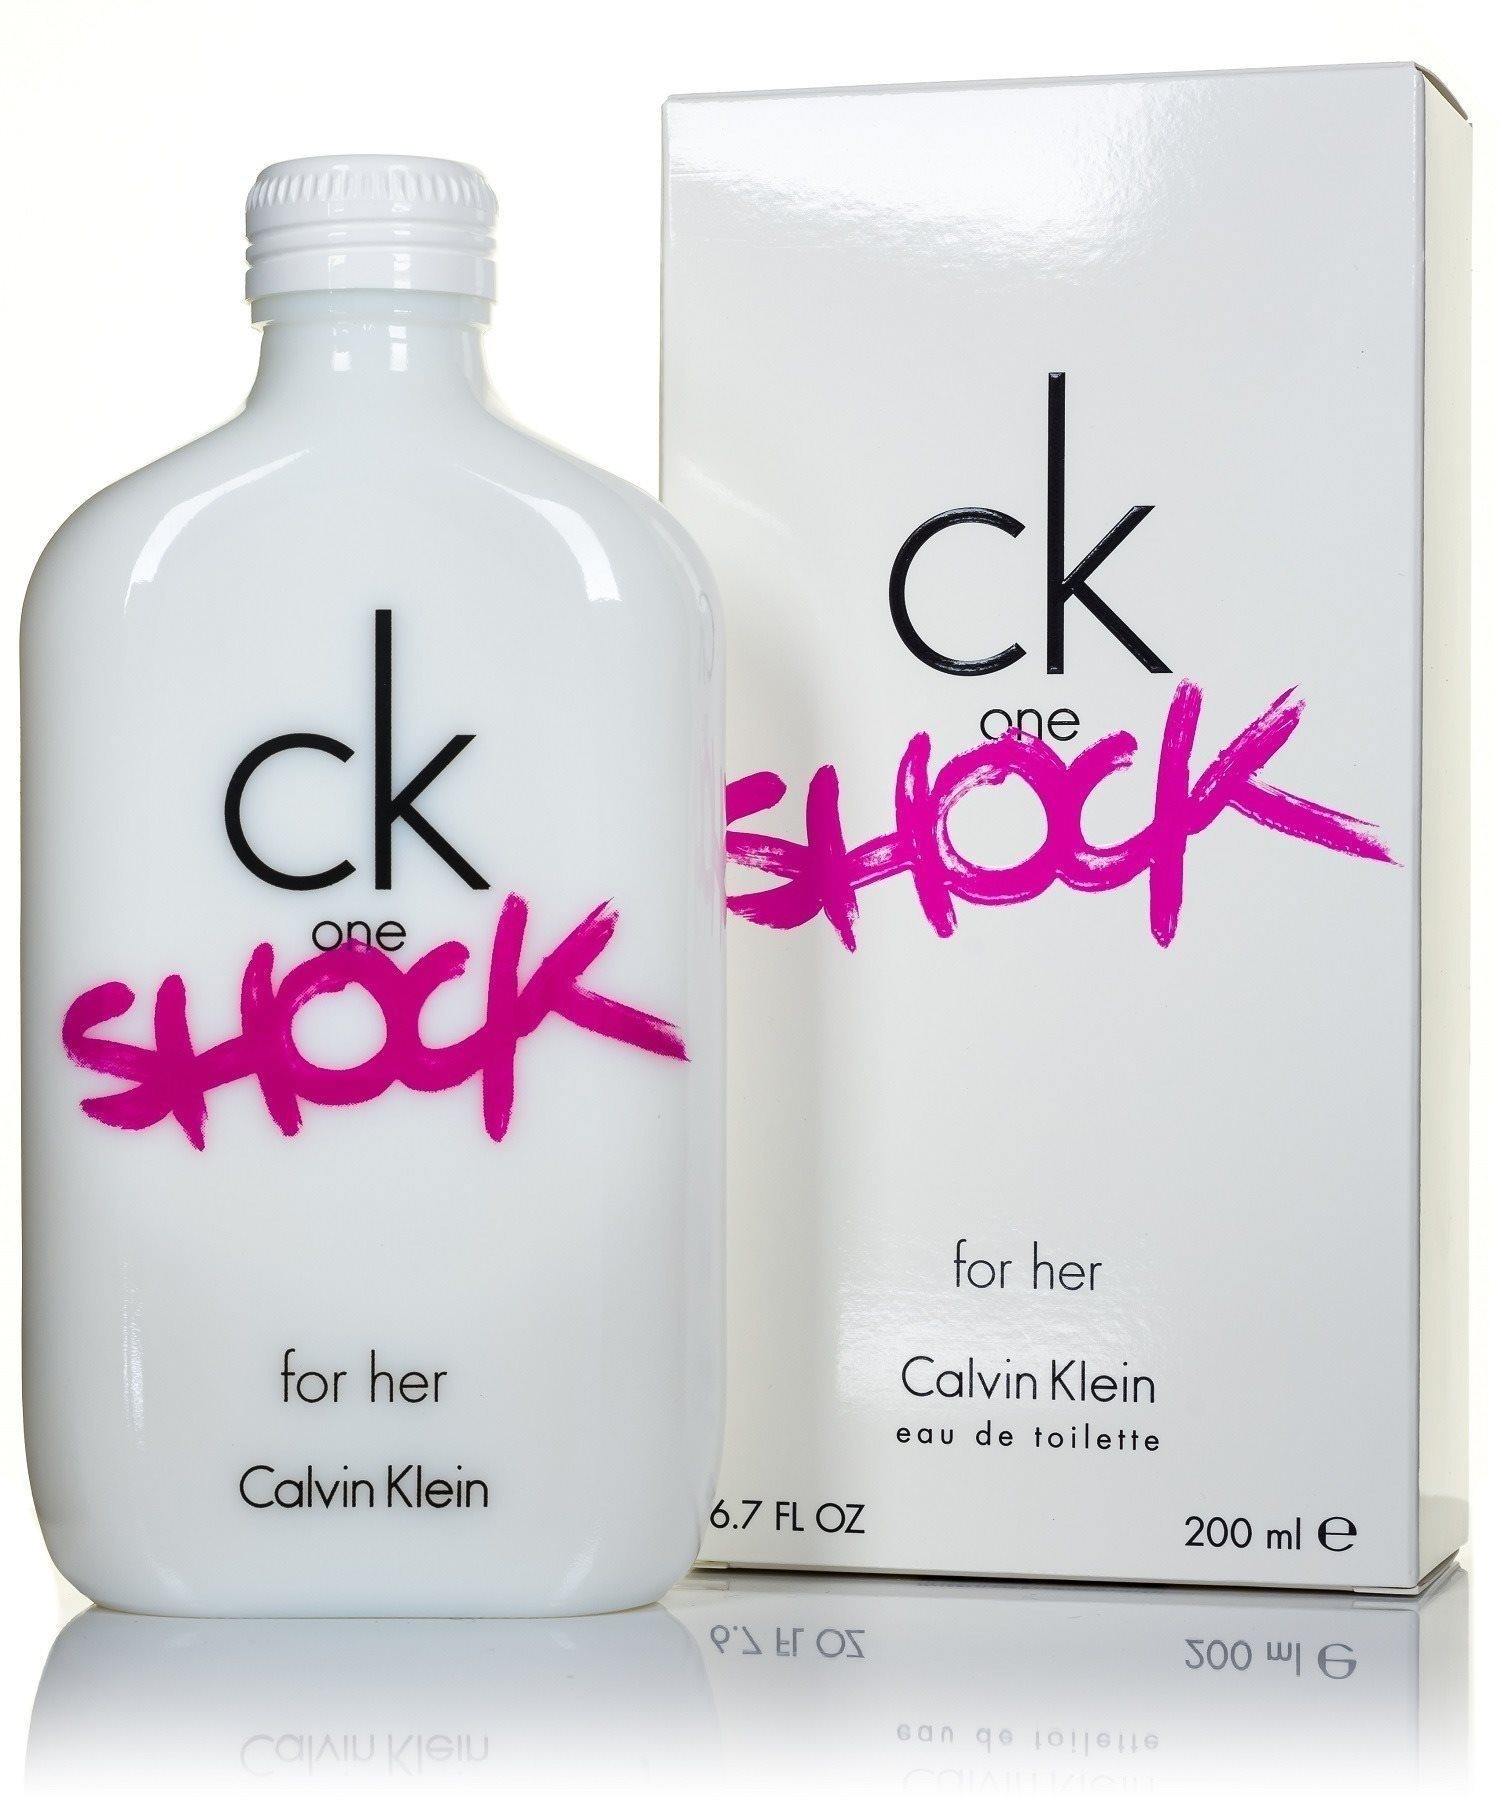 CALVIN KLEIN CK One Shock for Her EdT 200 ml